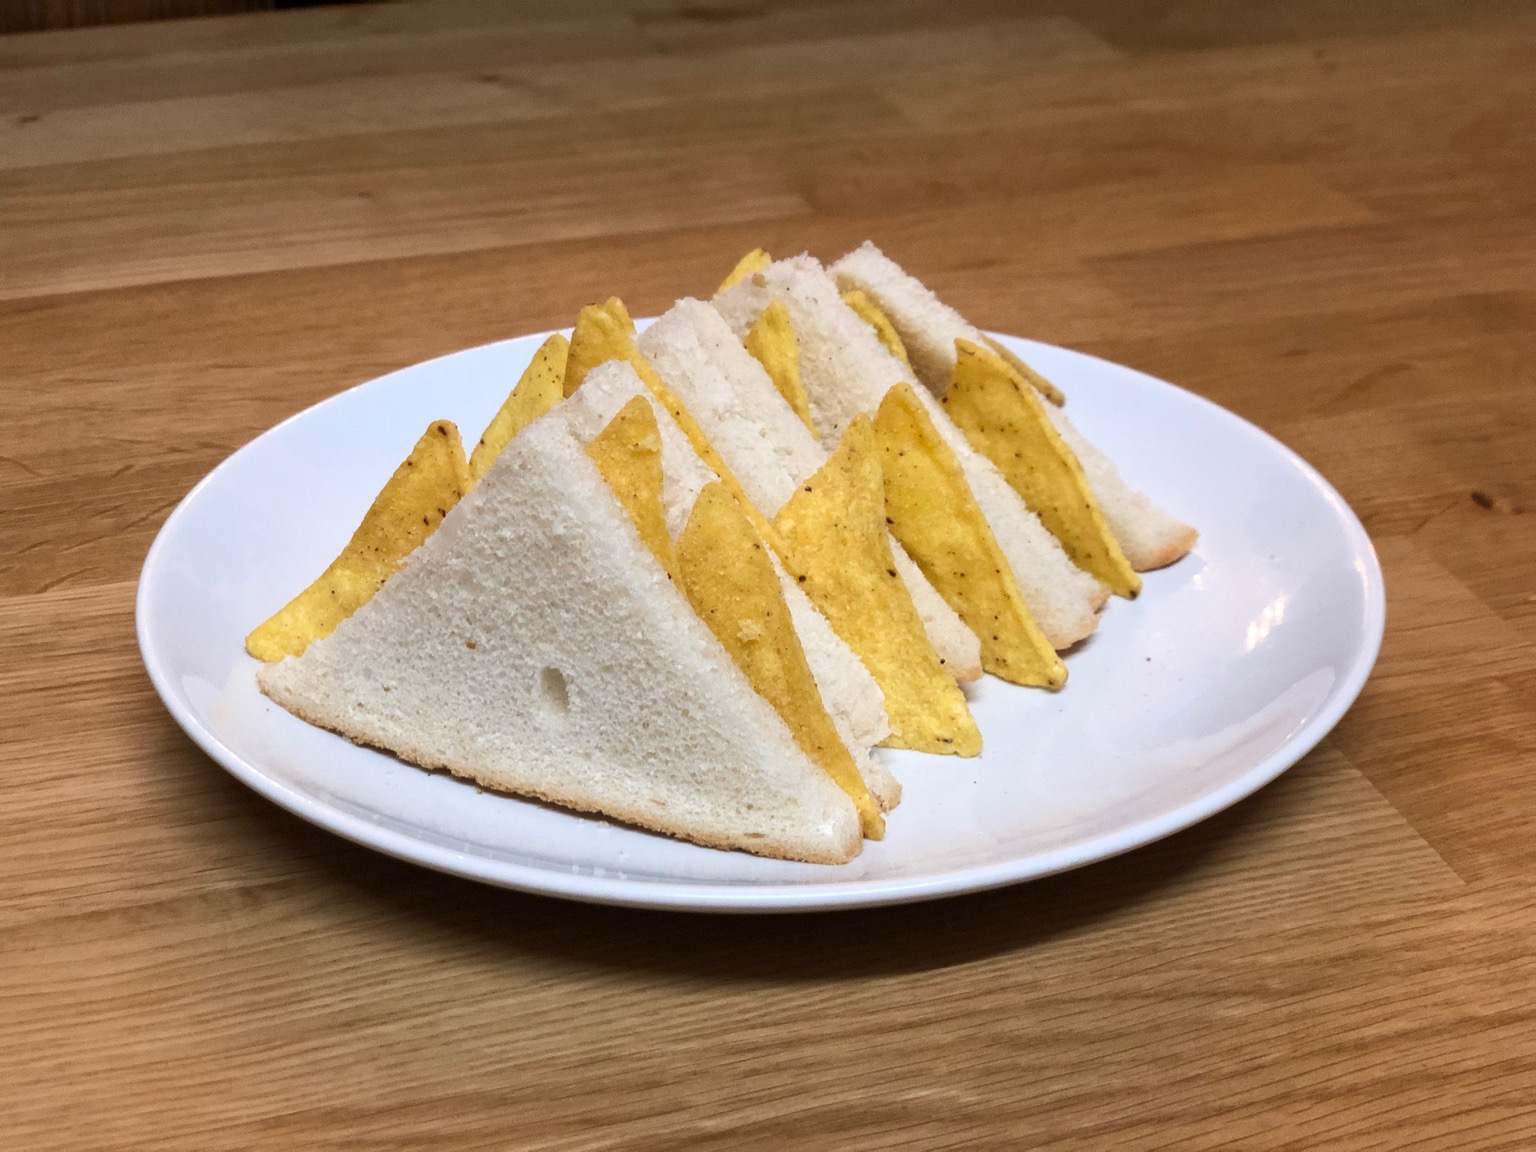 Small diagonally-cut white Dorito sandwiches